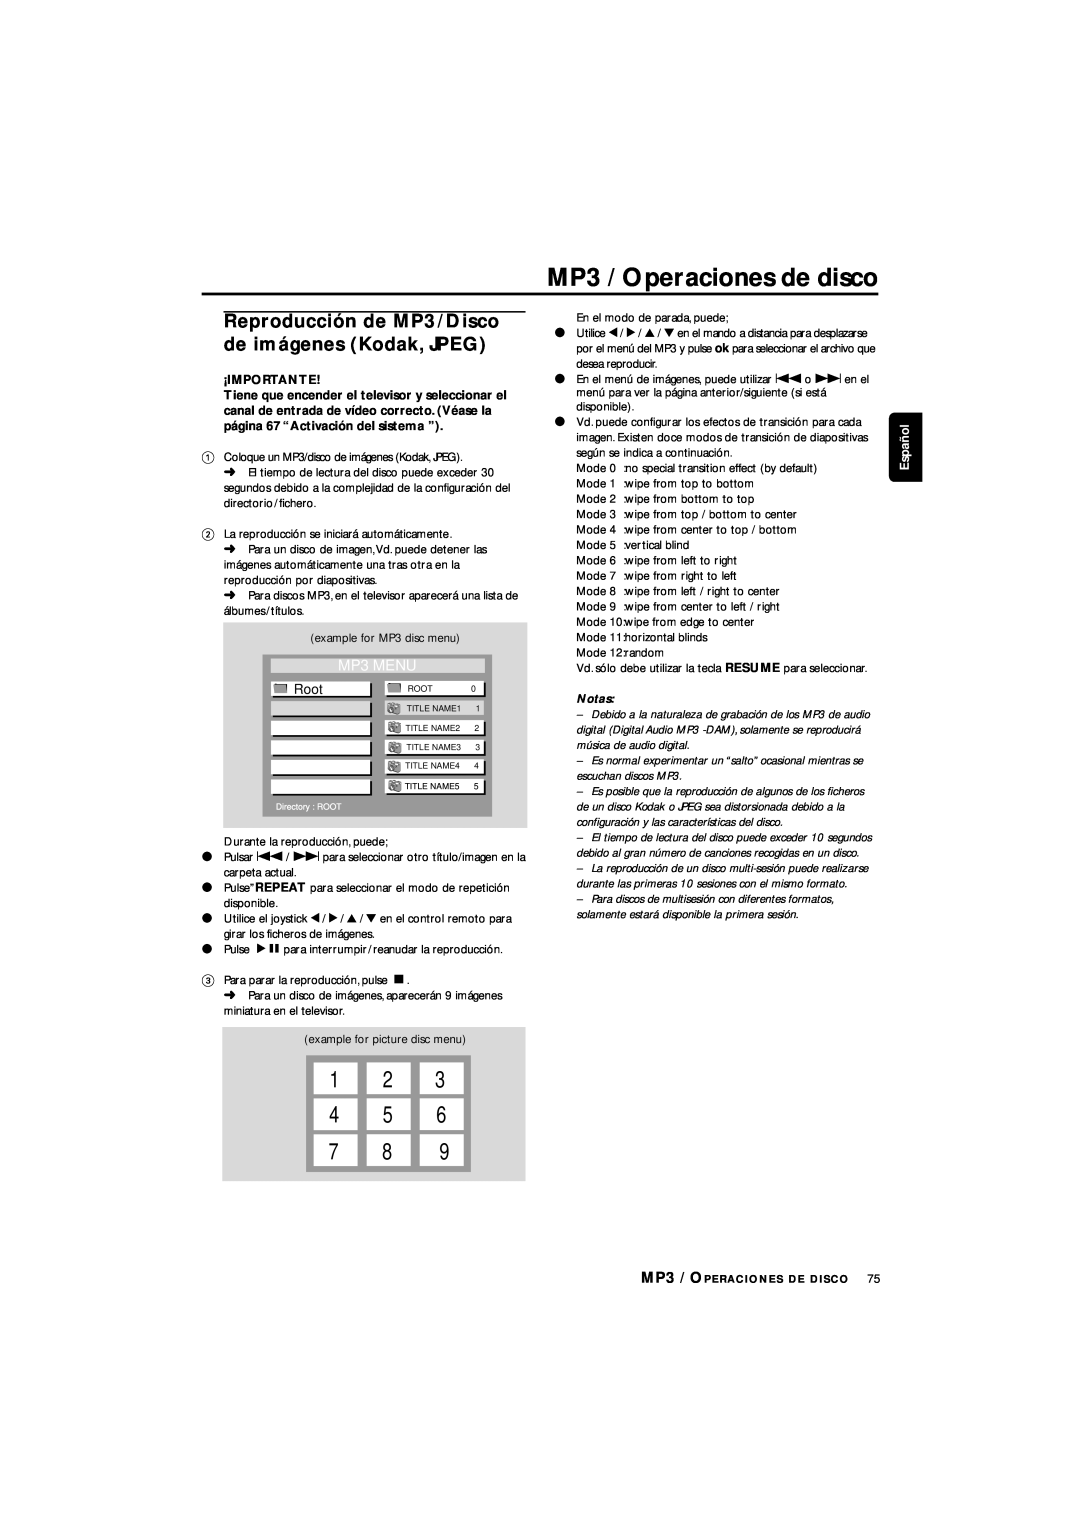 Philips LX3700D manual MP3 / Operaciones de disco, 1 2 4 5 7, MP3 MENU, Root, Español 